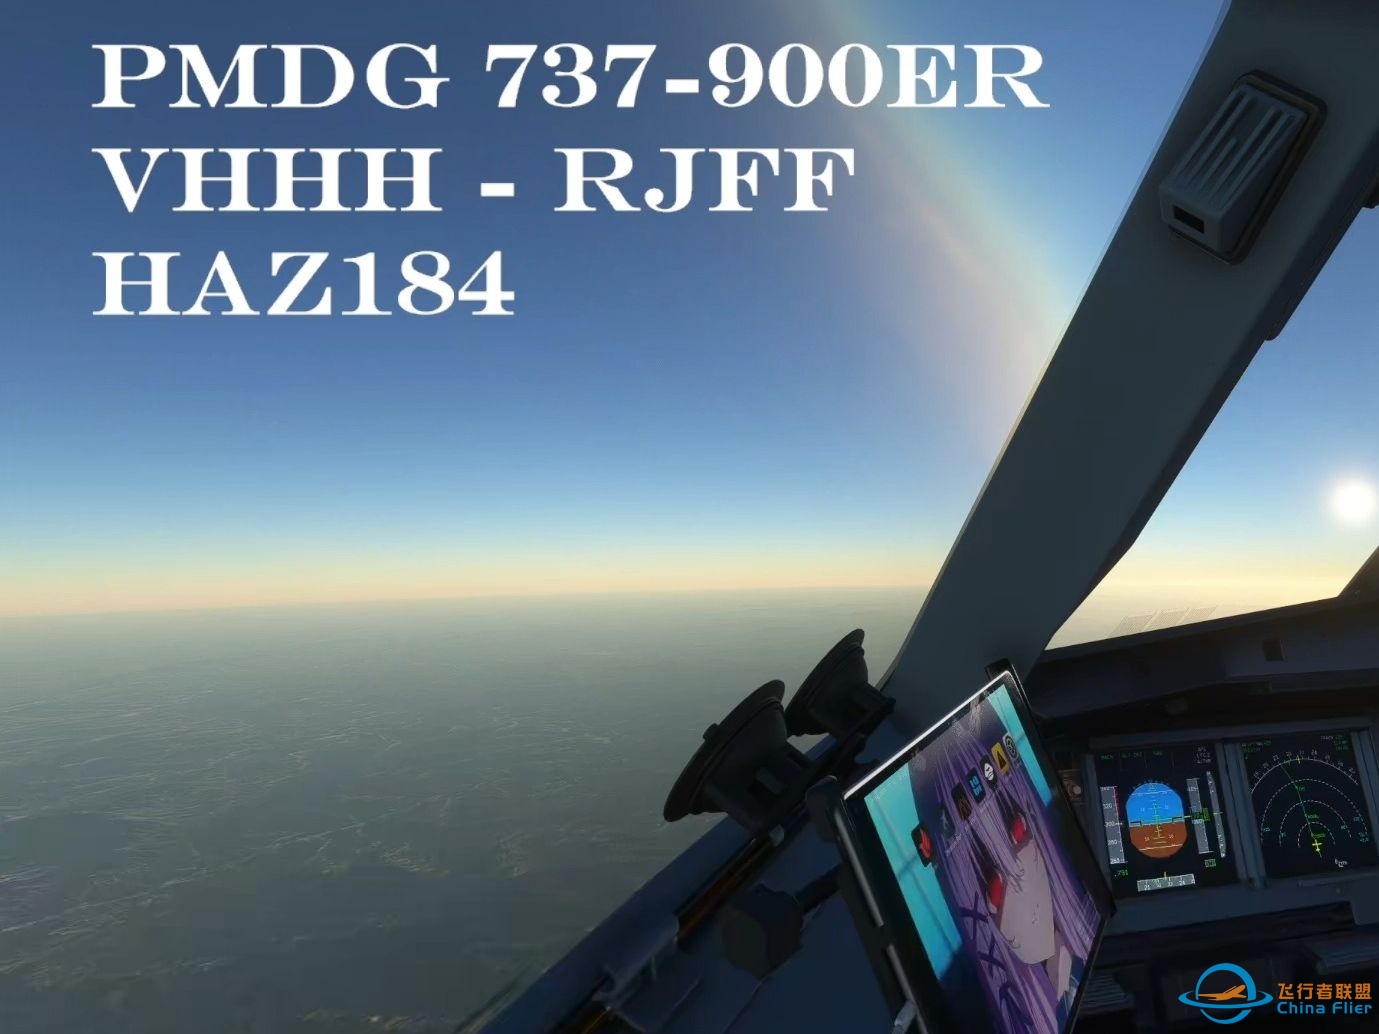 【微软飞行模拟】PMDG 737-900ER 香港——福冈-8682 